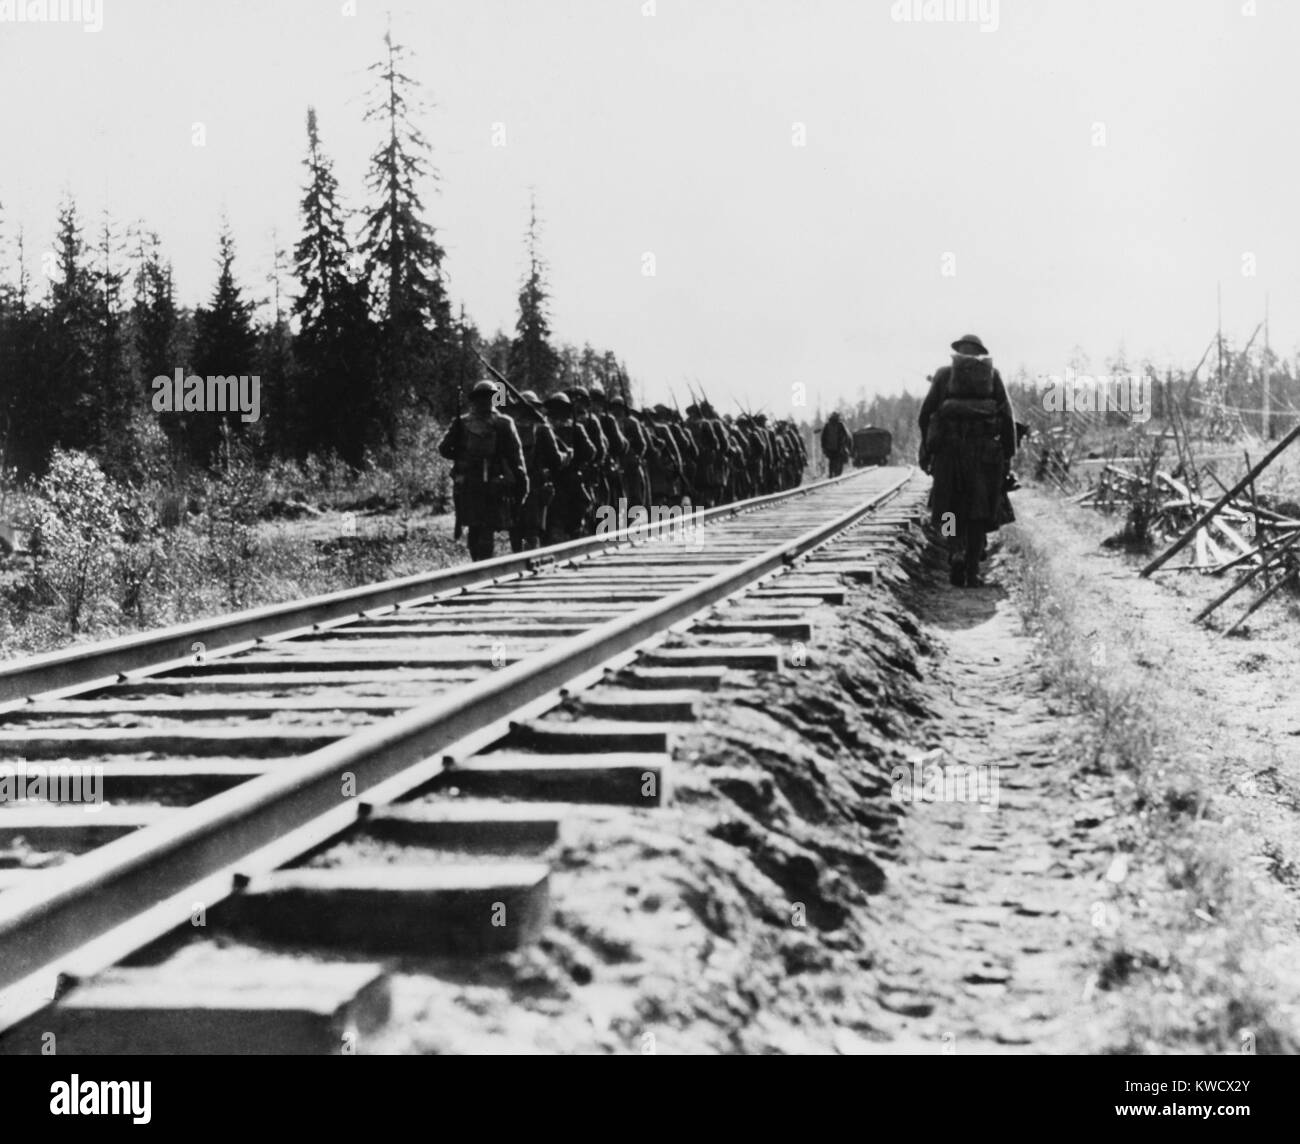 US-Infanterie, marschierend entlang der Bahnstrecken während der russischen Intervention, 1918-20. Ihre Mission war der Transsibirischen Eisenbahn zu schützen und gleichzeitig die amerikanischen Neutralität während der Russischen Revolution und Bürgerkrieg (BSLOC 2017 2 12) Stockfoto